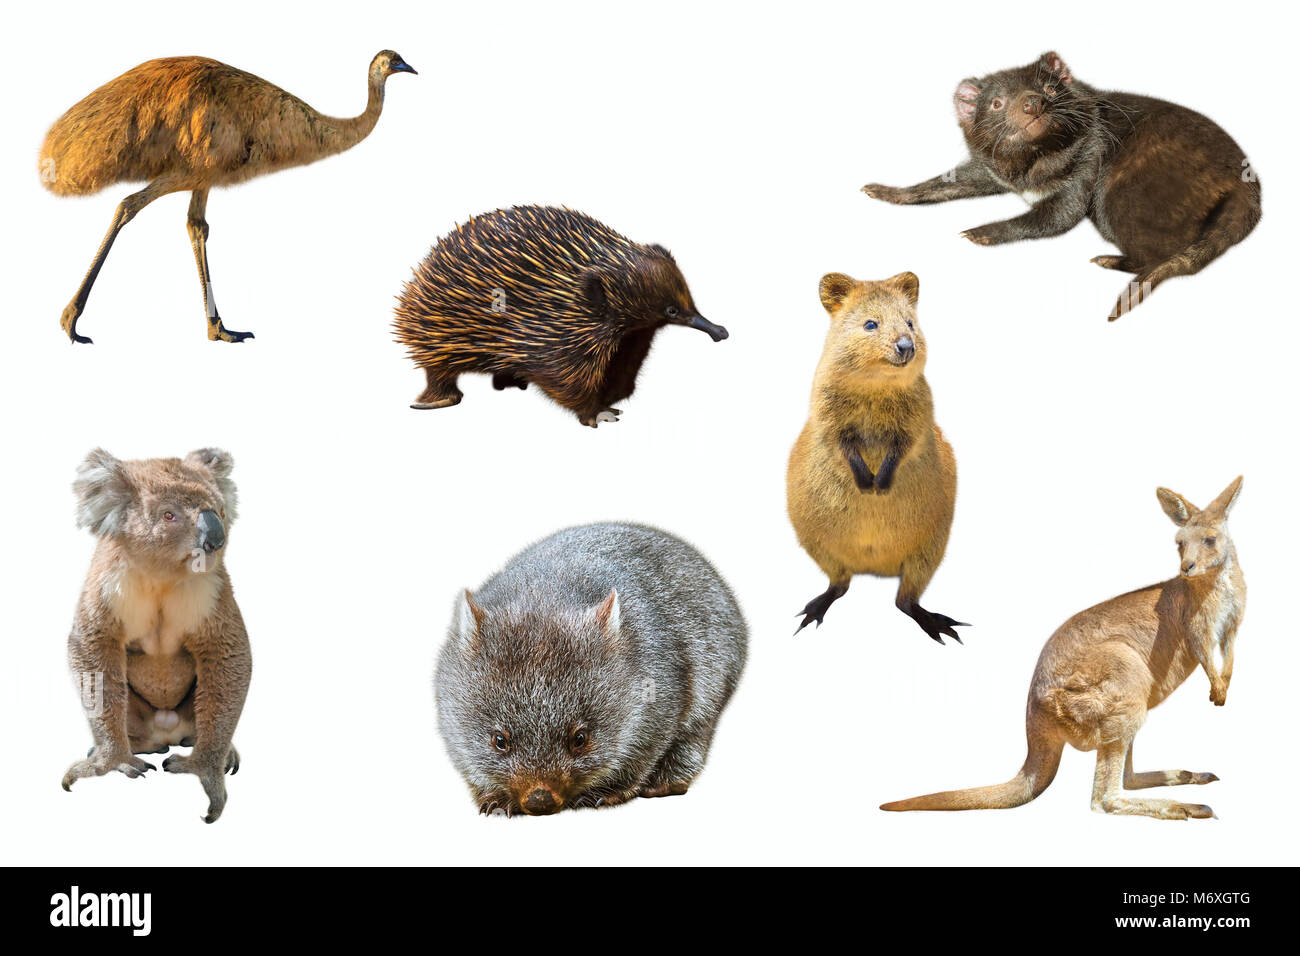 Collage de la faune australienne, isolé sur fond blanc. L'UEM, l'Échidné, Diable de Tasmanie, le Wombat, le kangourou, le koala et le quokka. Banque D'Images